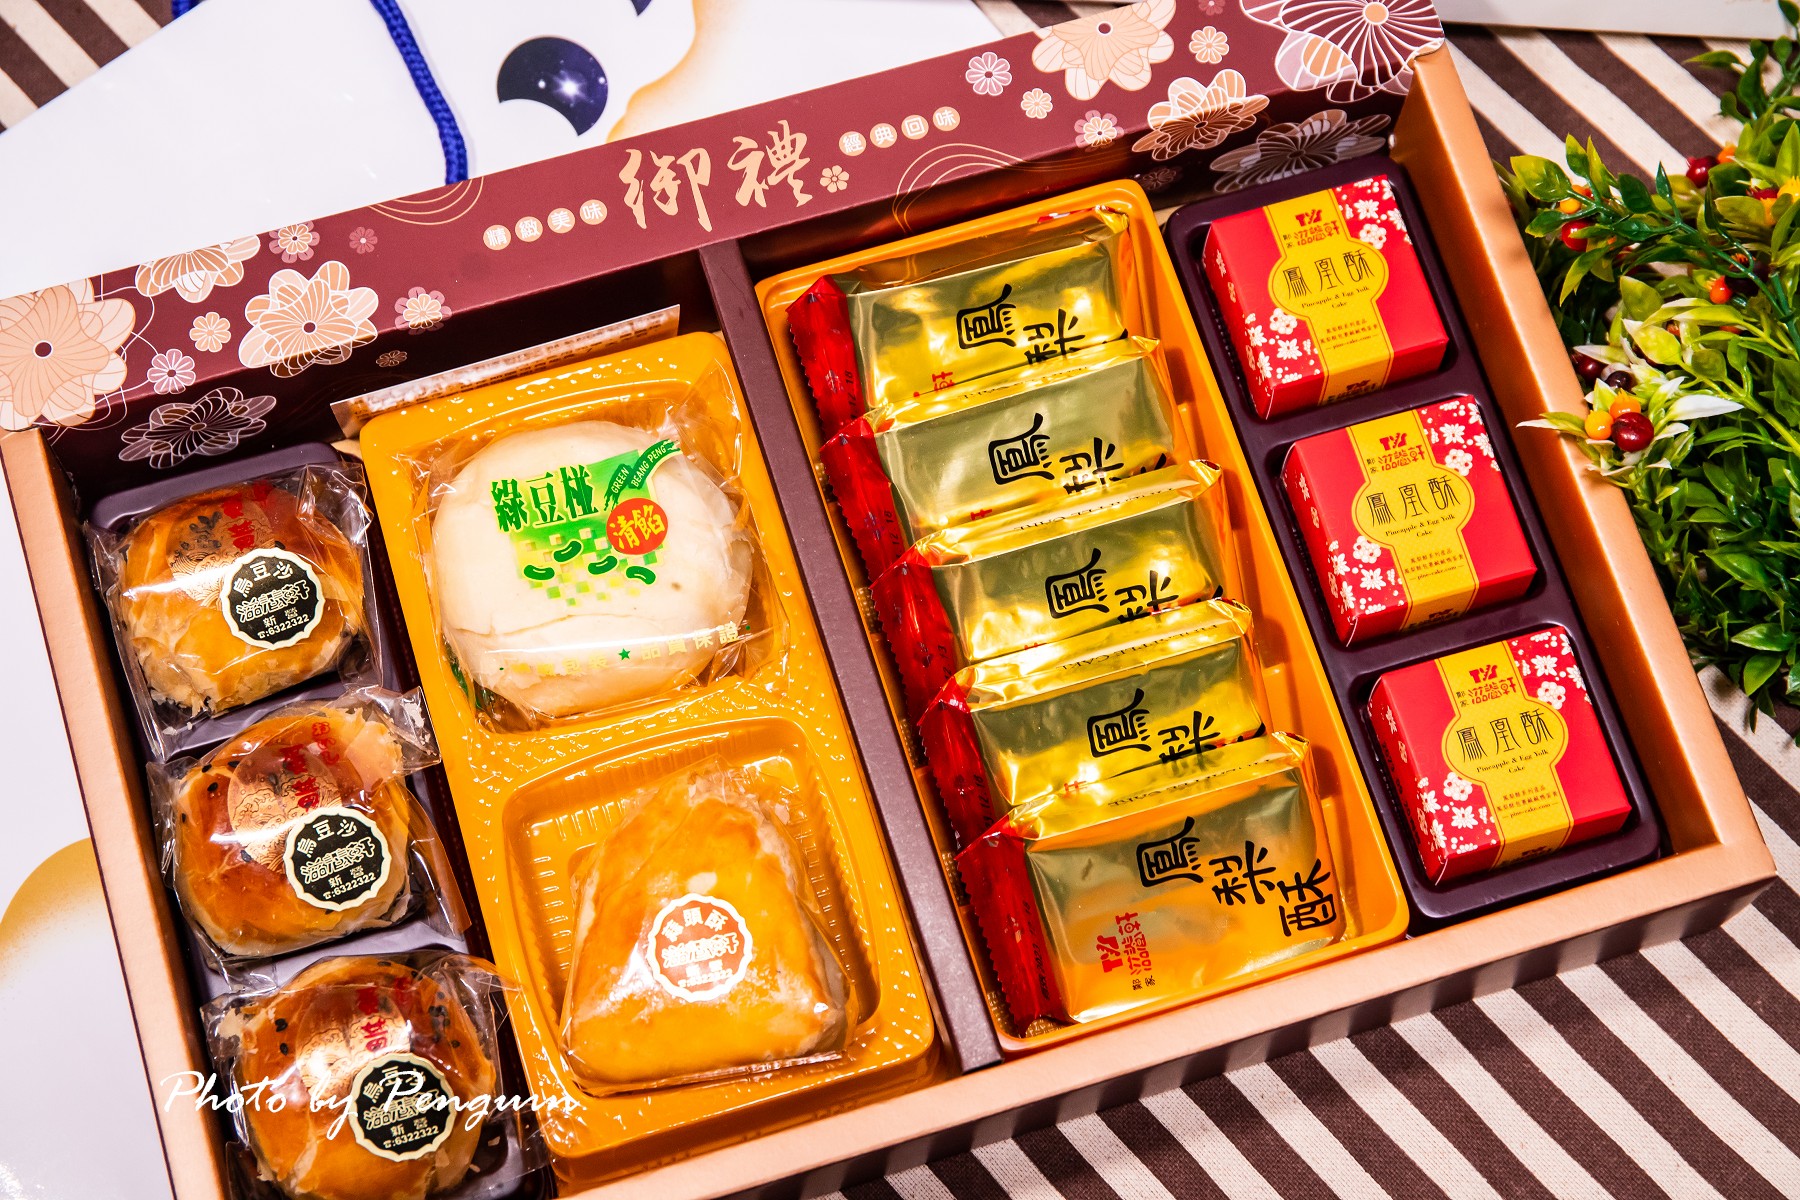 台南．新營區．滋養軒Tzu Yang Hsuan中秋綜合禮盒．一次品嘗新營在地七十年老店經典美味糕點組合